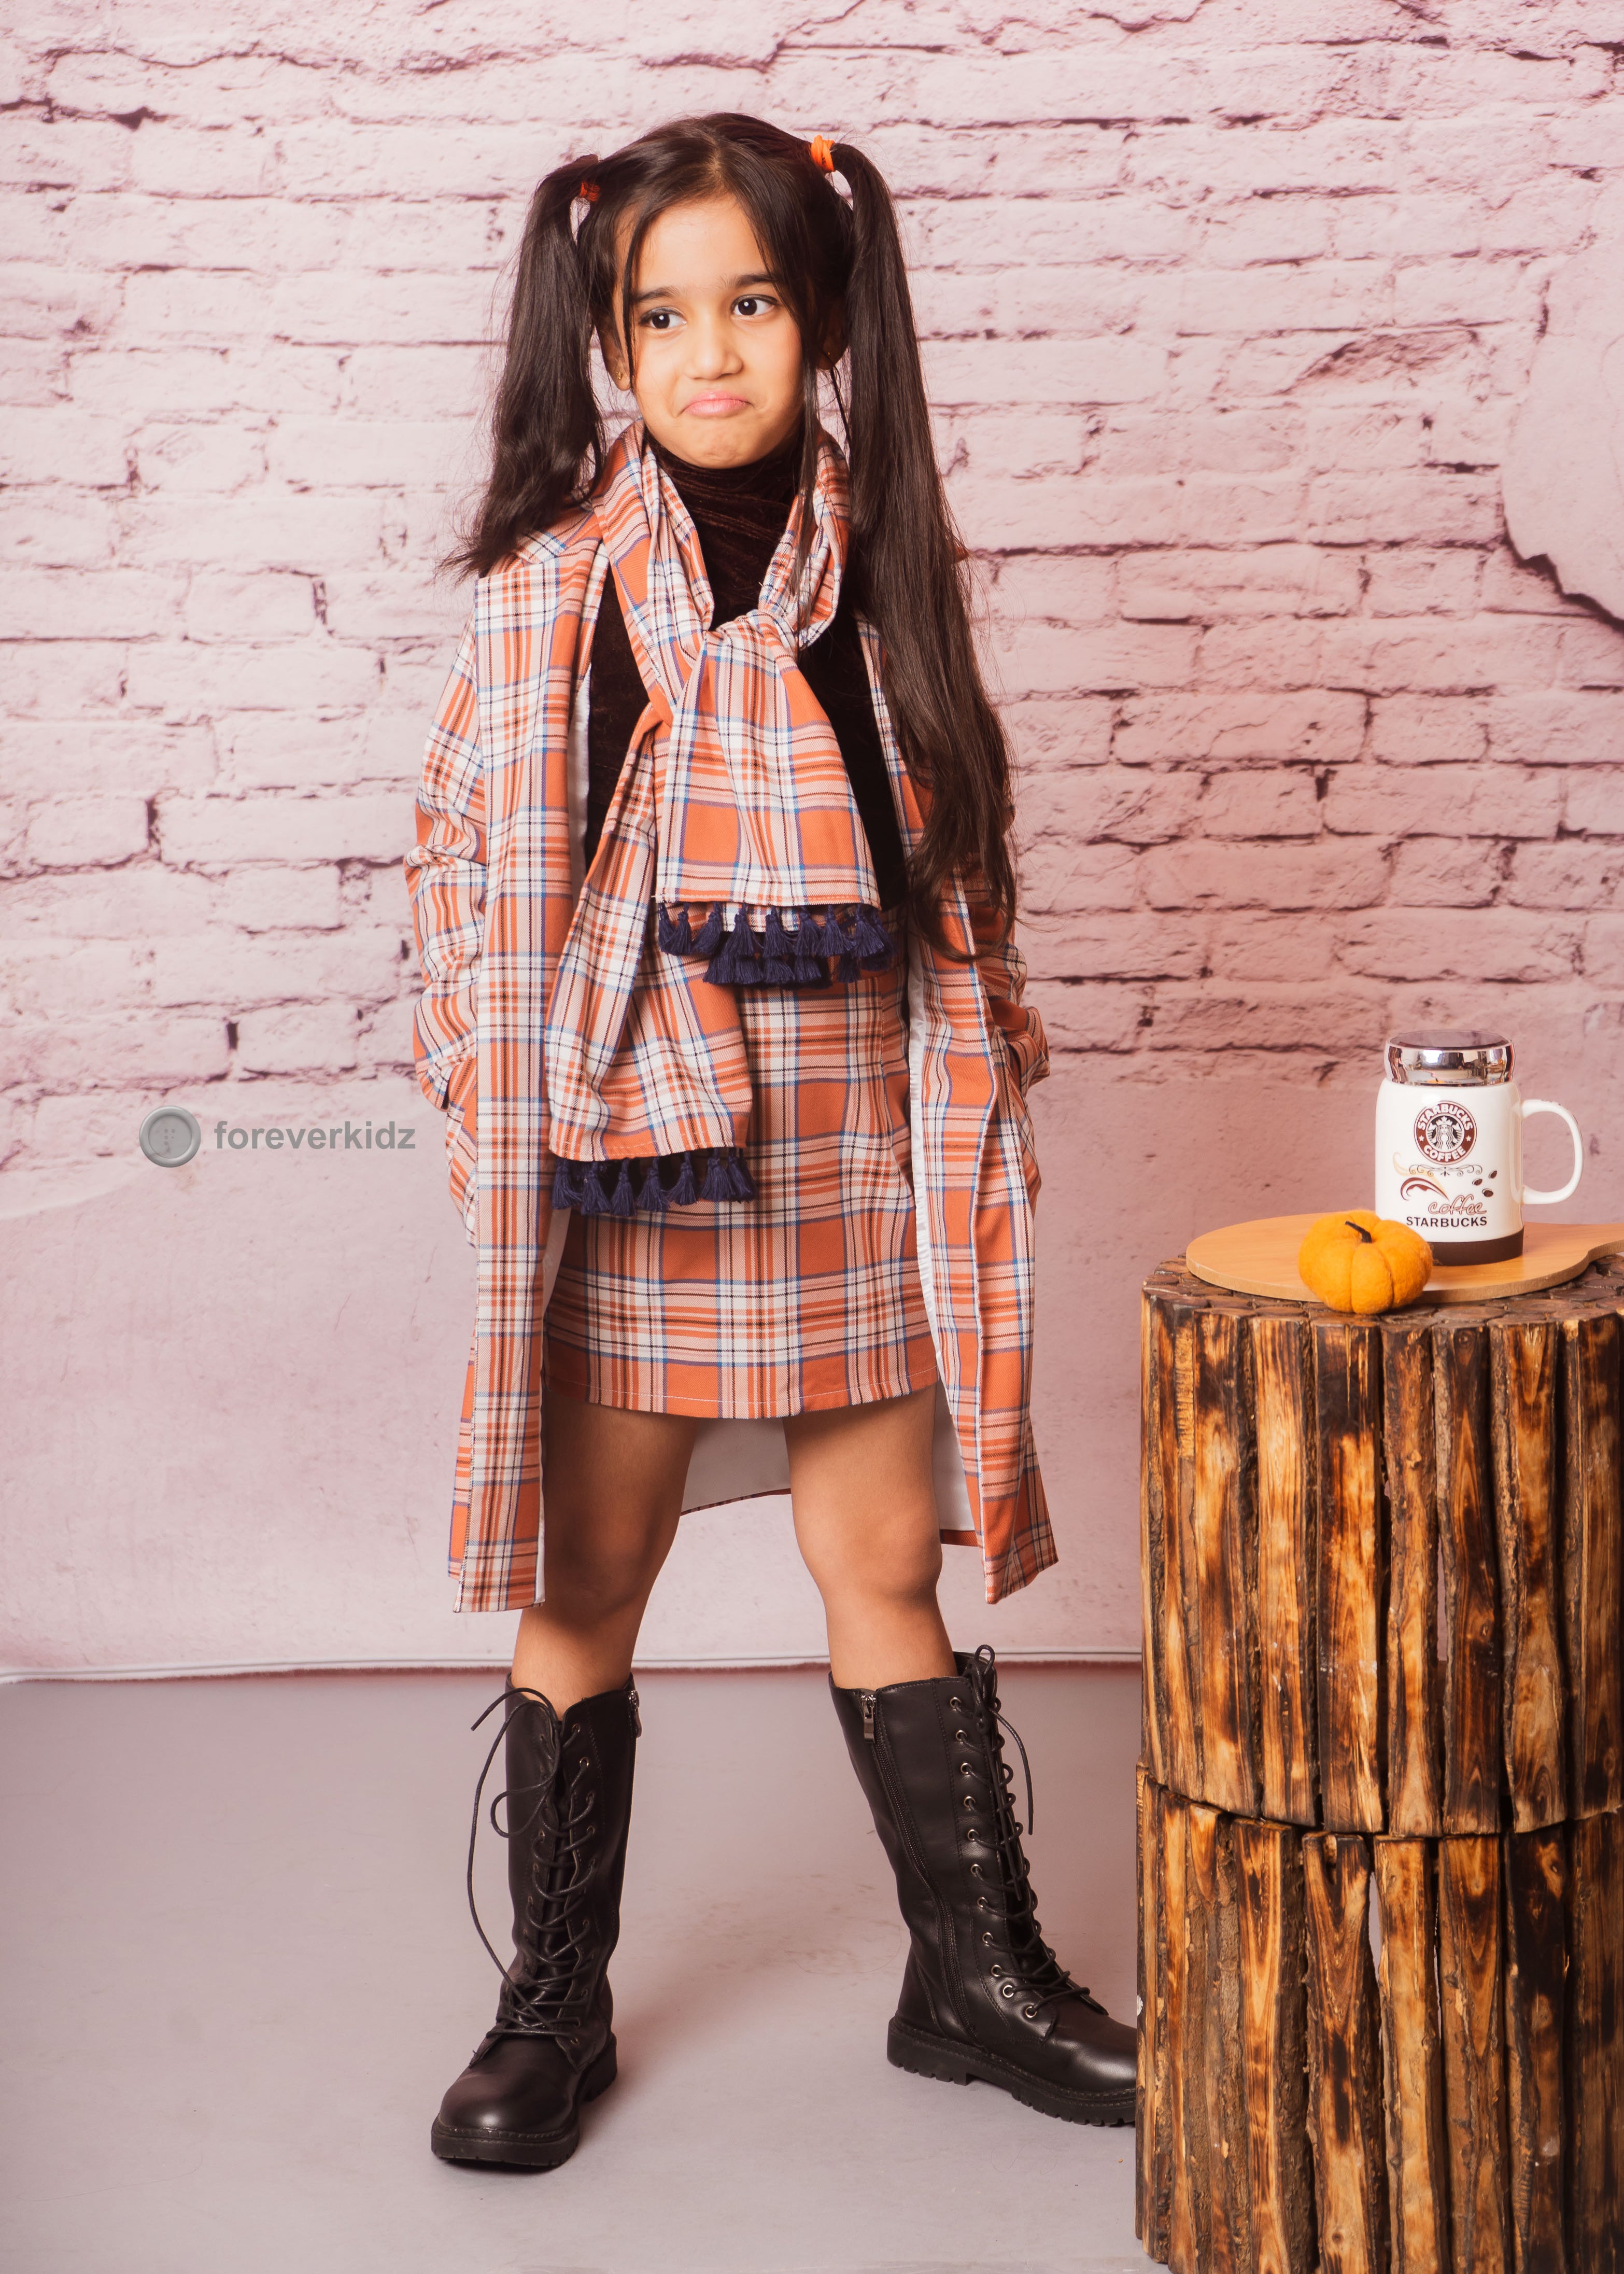 Scottish Fashion Dress with Stylish Coat for Little Girls 